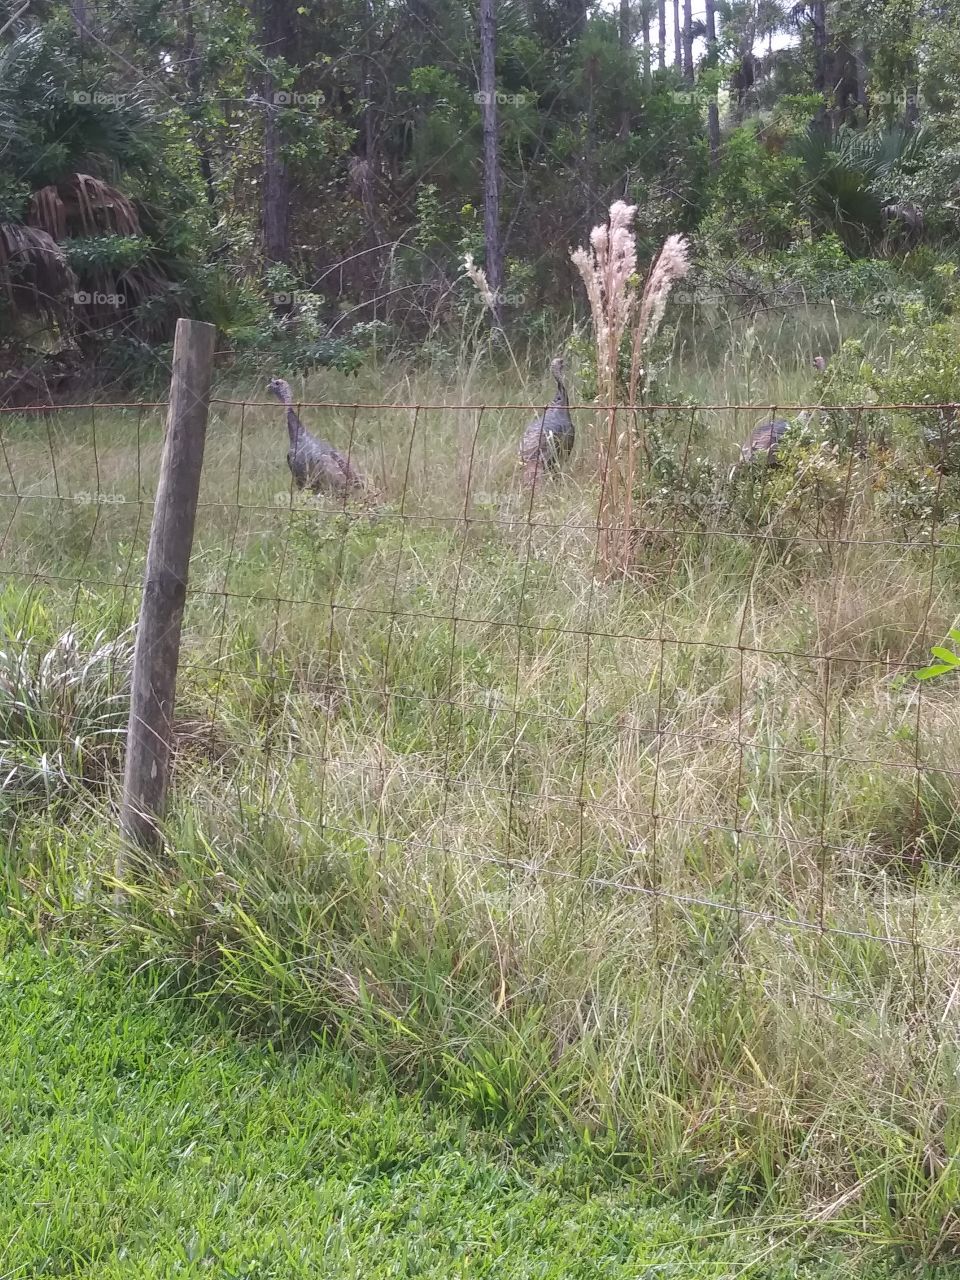 wild turkeys in a field